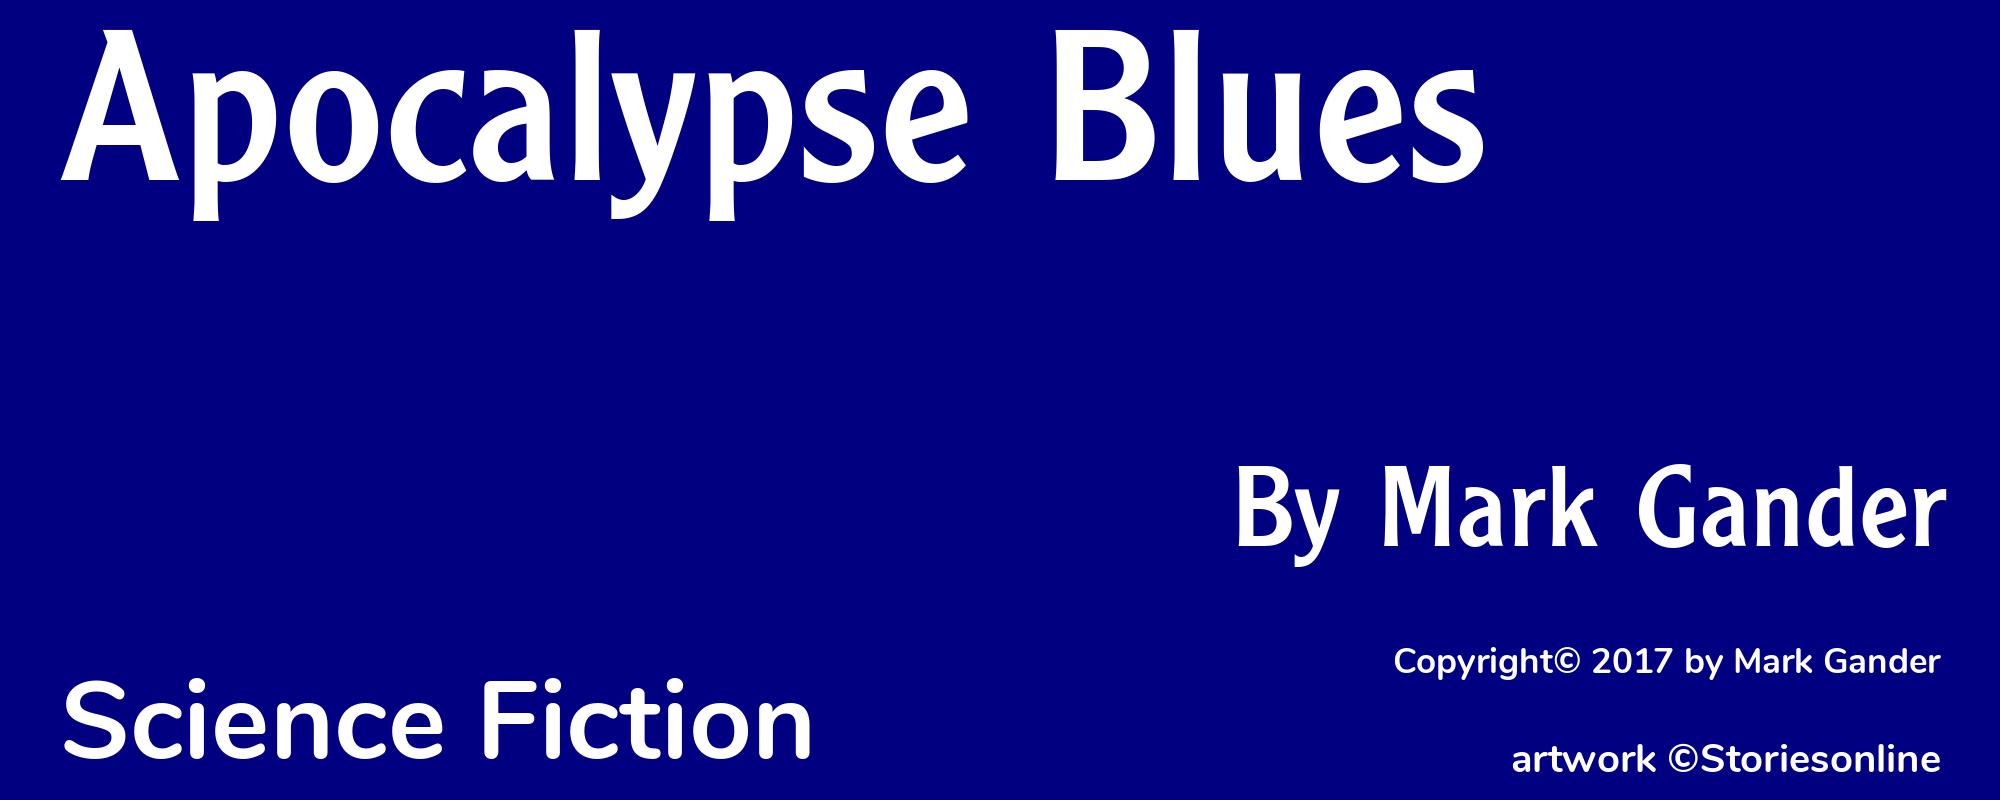 Apocalypse Blues - Cover